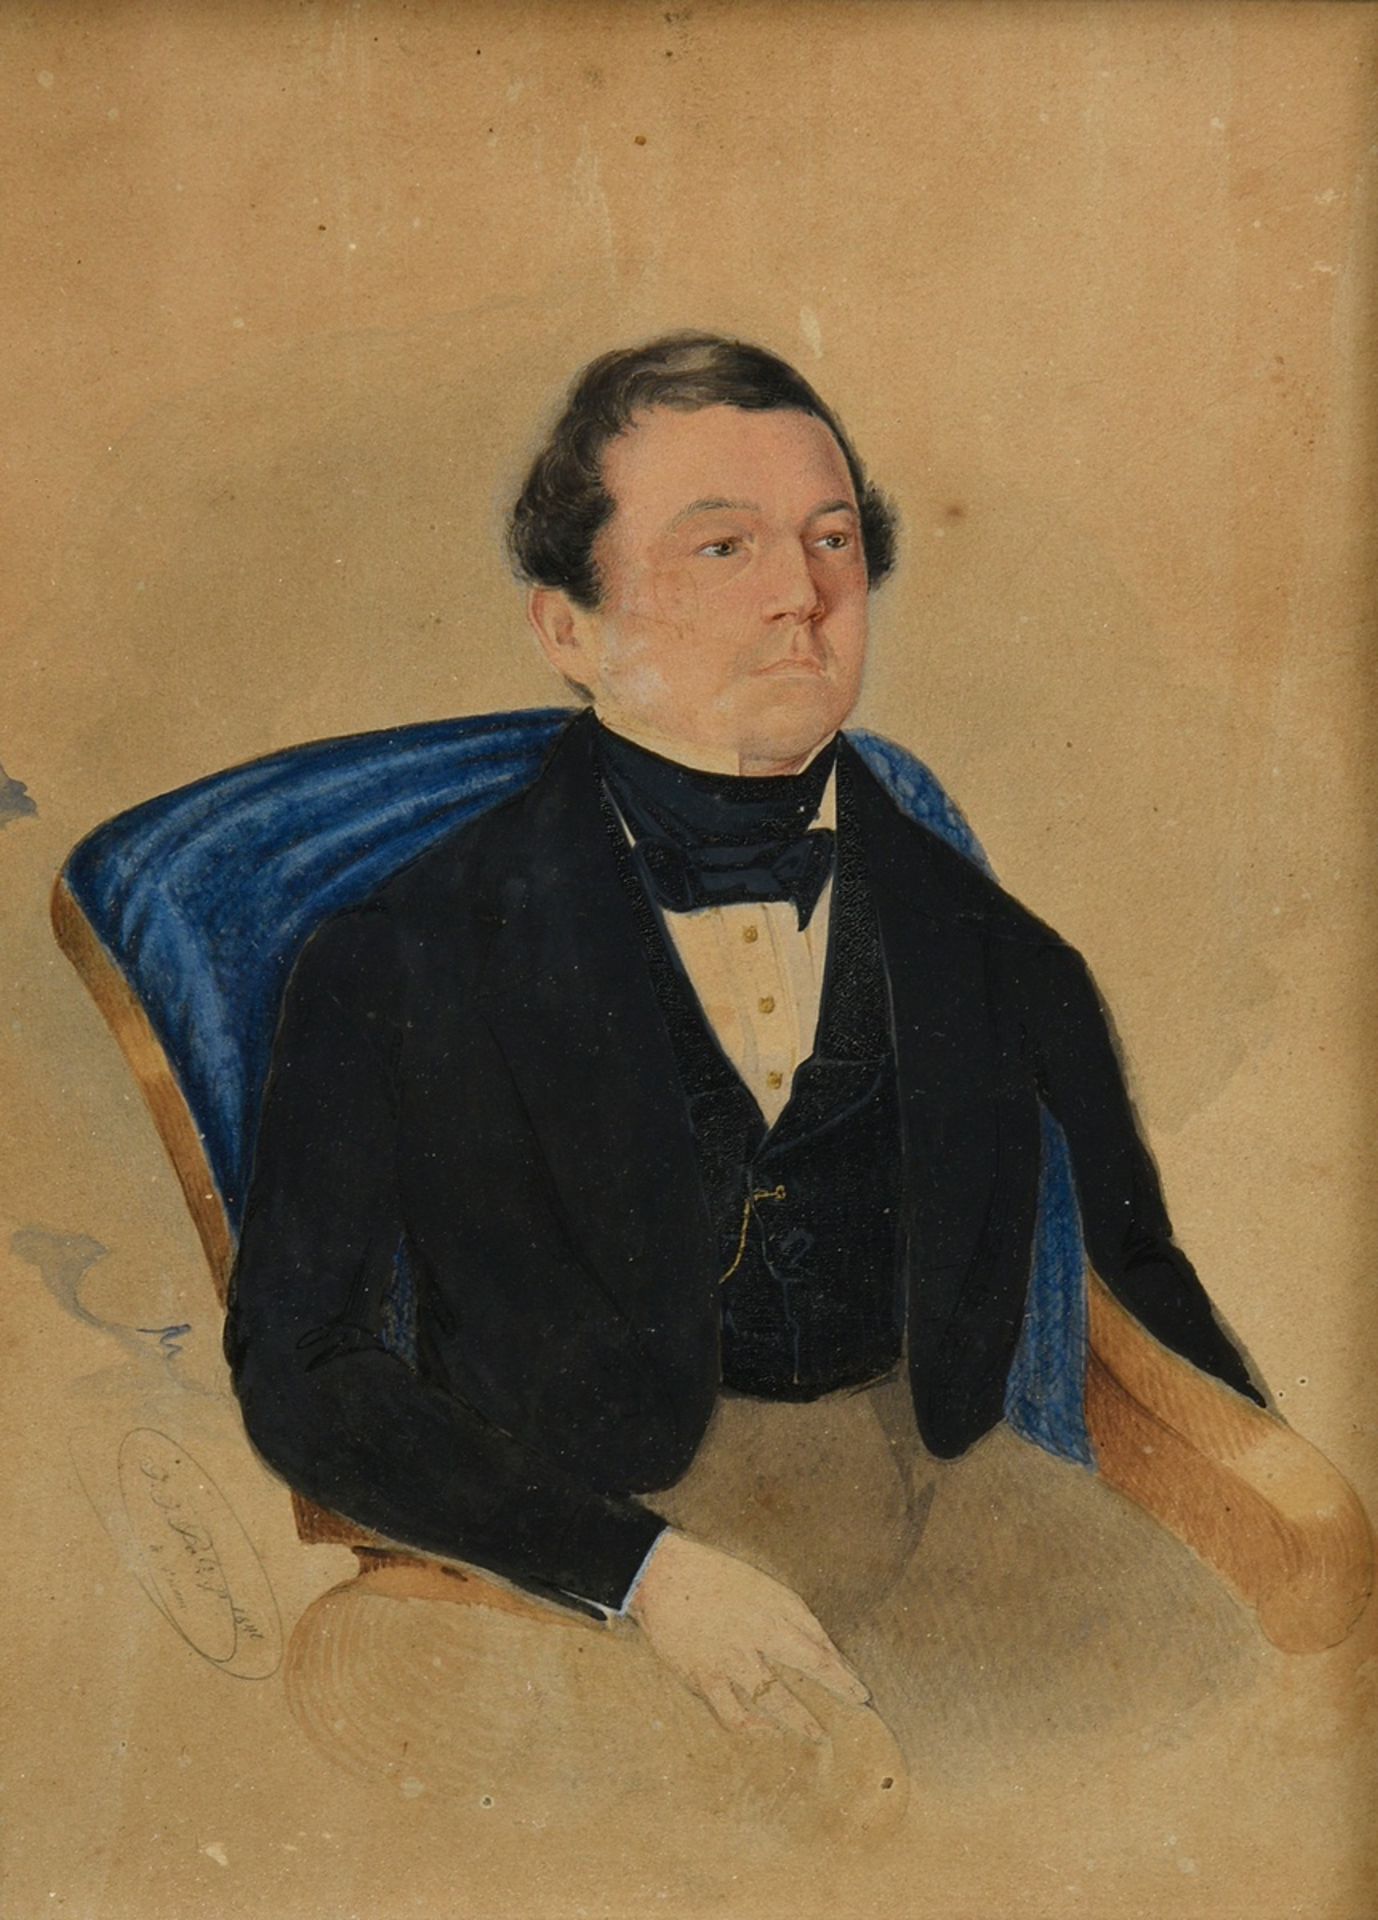 Bolz, G.J. "Portrait miniature of a gentleman" 1840, watercolour/gouache on paper, u.l. sign./dat.,